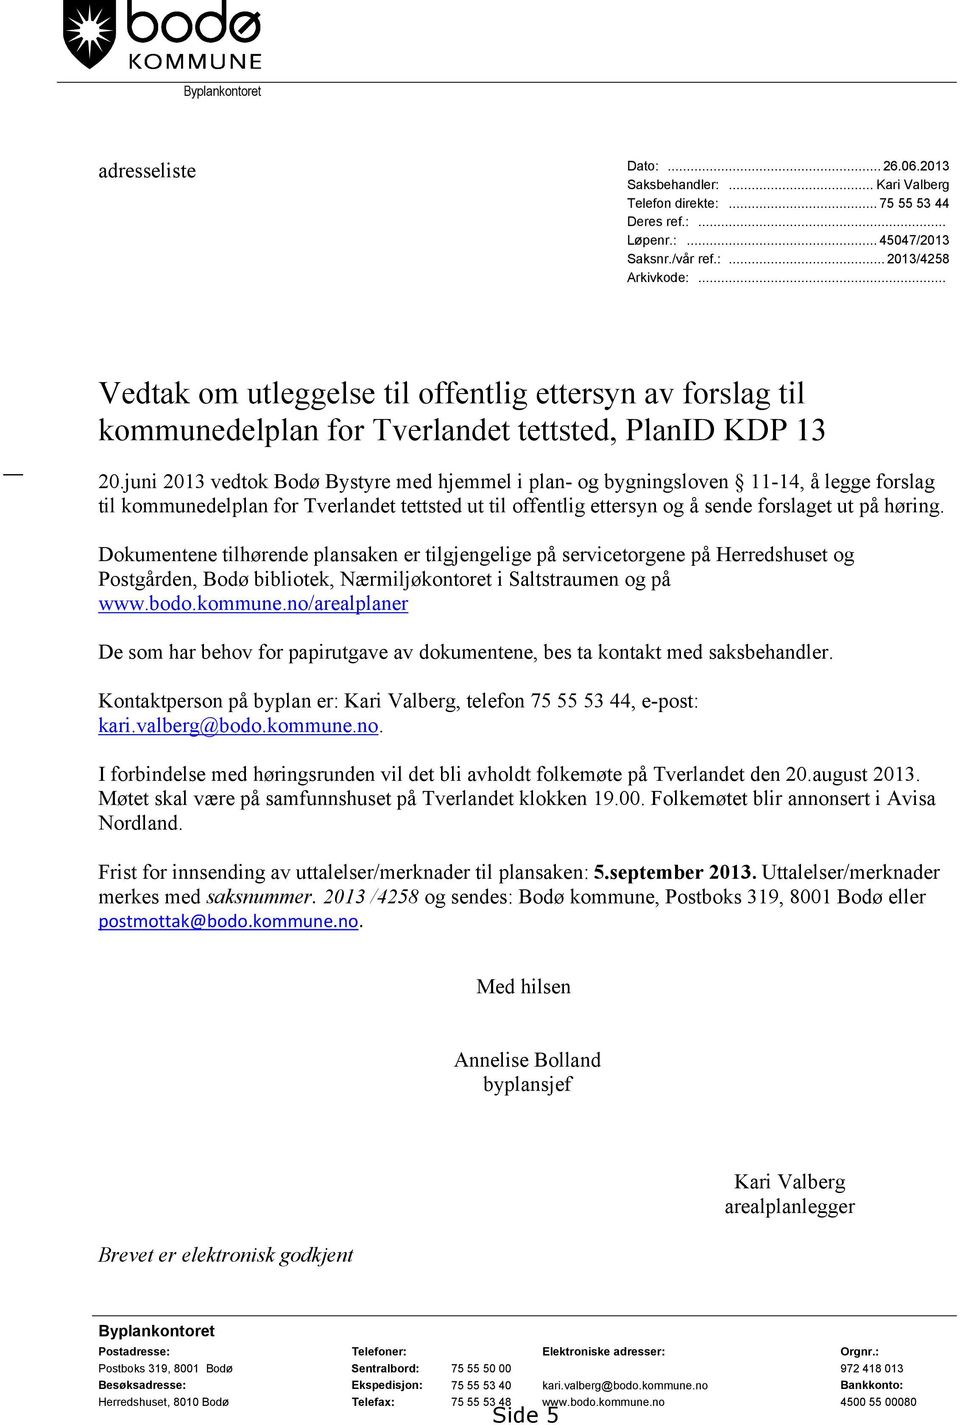 juni 2013 vedtok Bodø Bystyre med hjemmel i plan- og bygningsloven 11-14, å legge forslag til kommunedelplan for Tverlandet tettsted ut til offentlig ettersyn og å sende forslaget ut på høring.